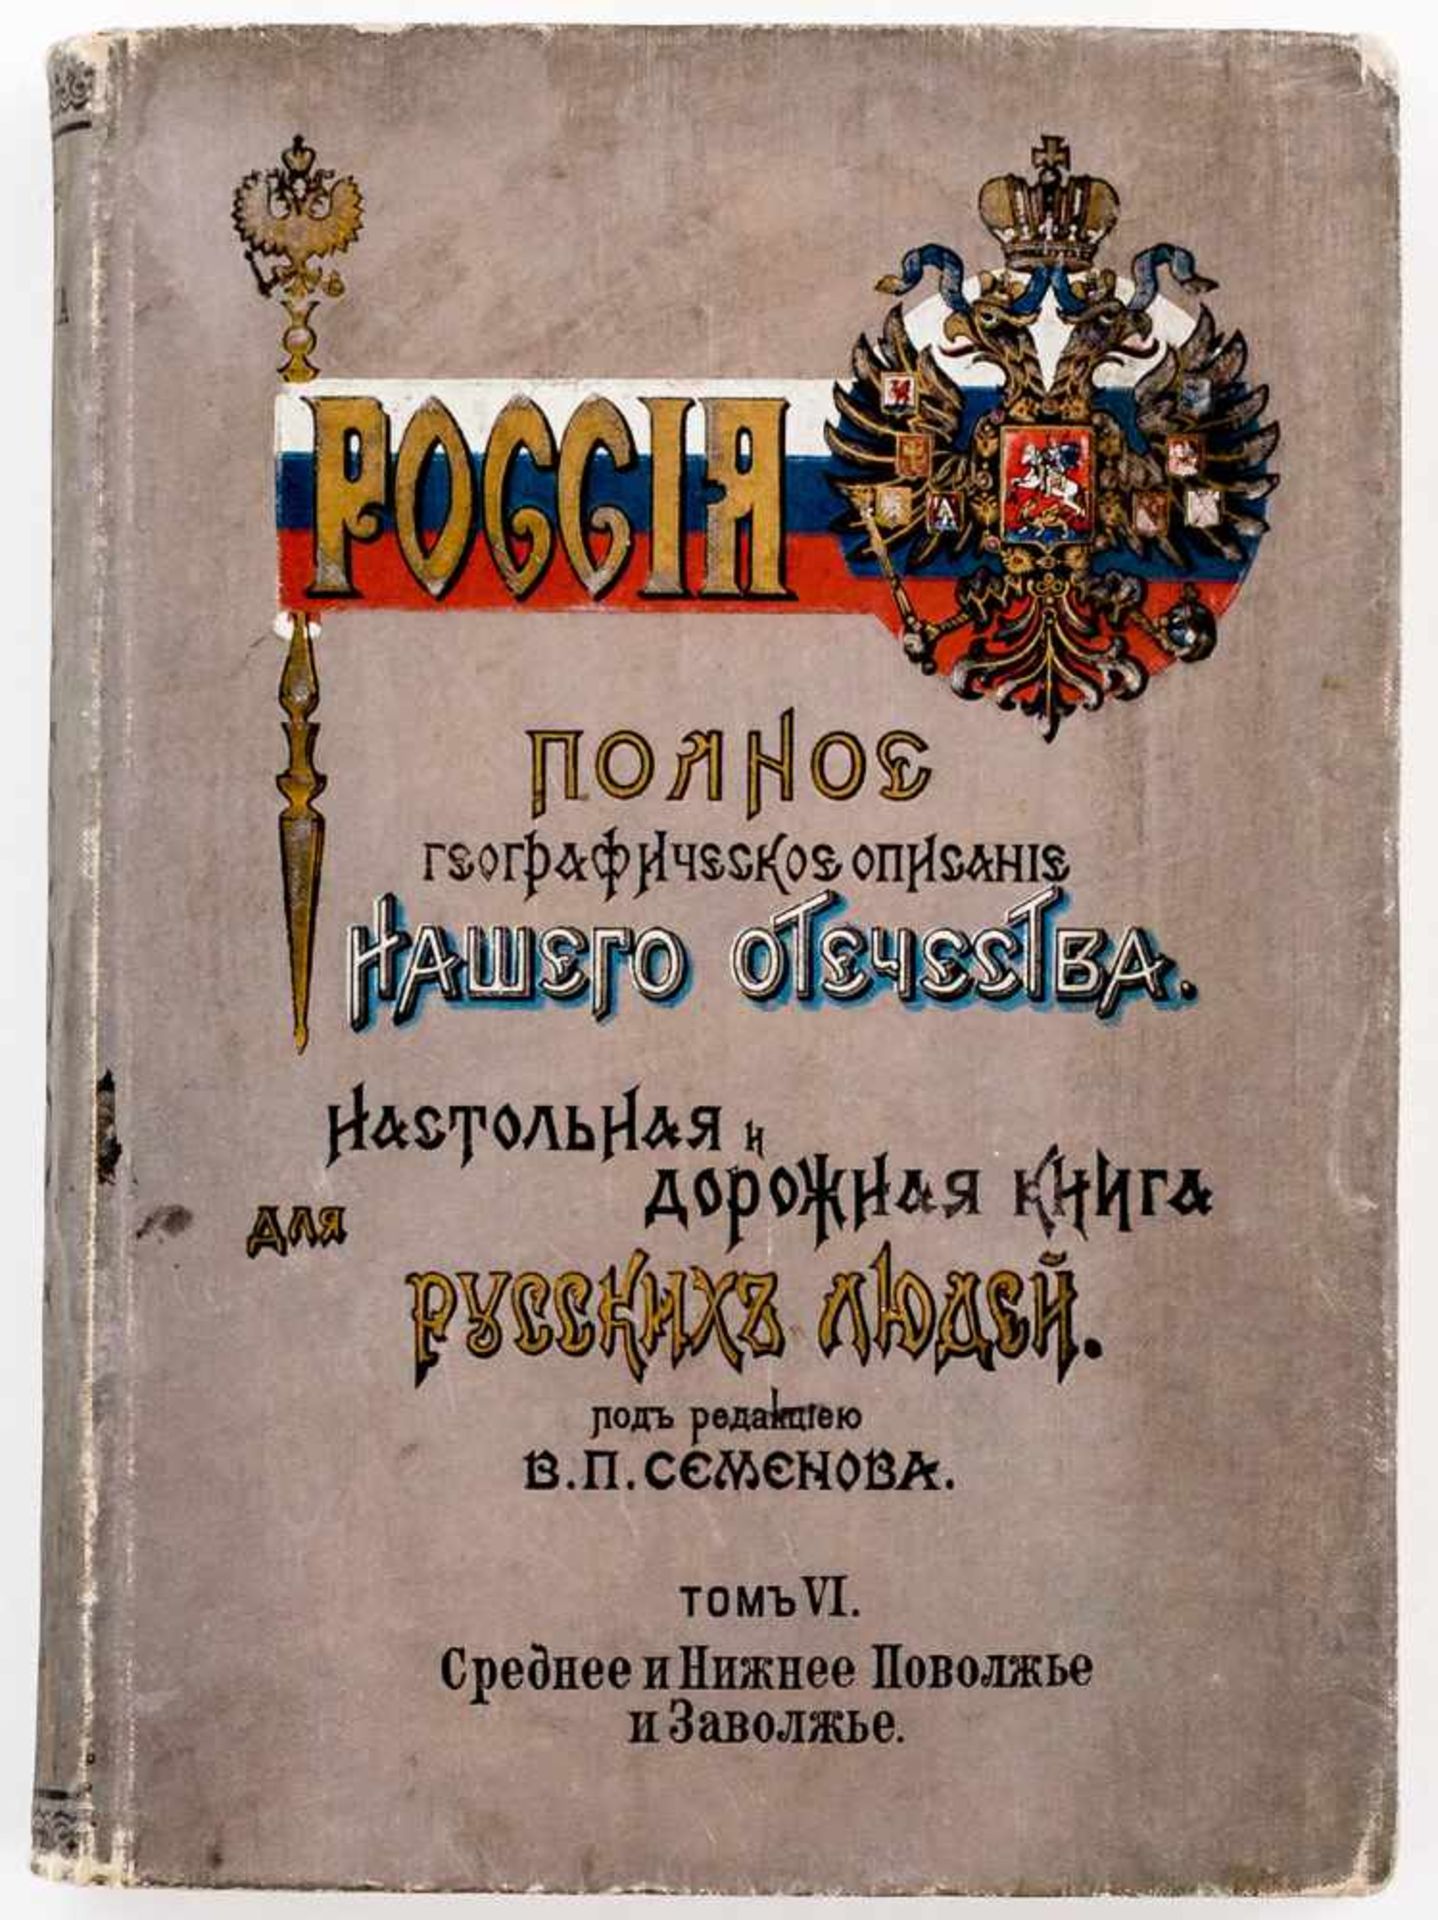 Geographische Beschreibung Russlands, Bd. 6, viele Abbildungen und ausklappbare Karte, St.